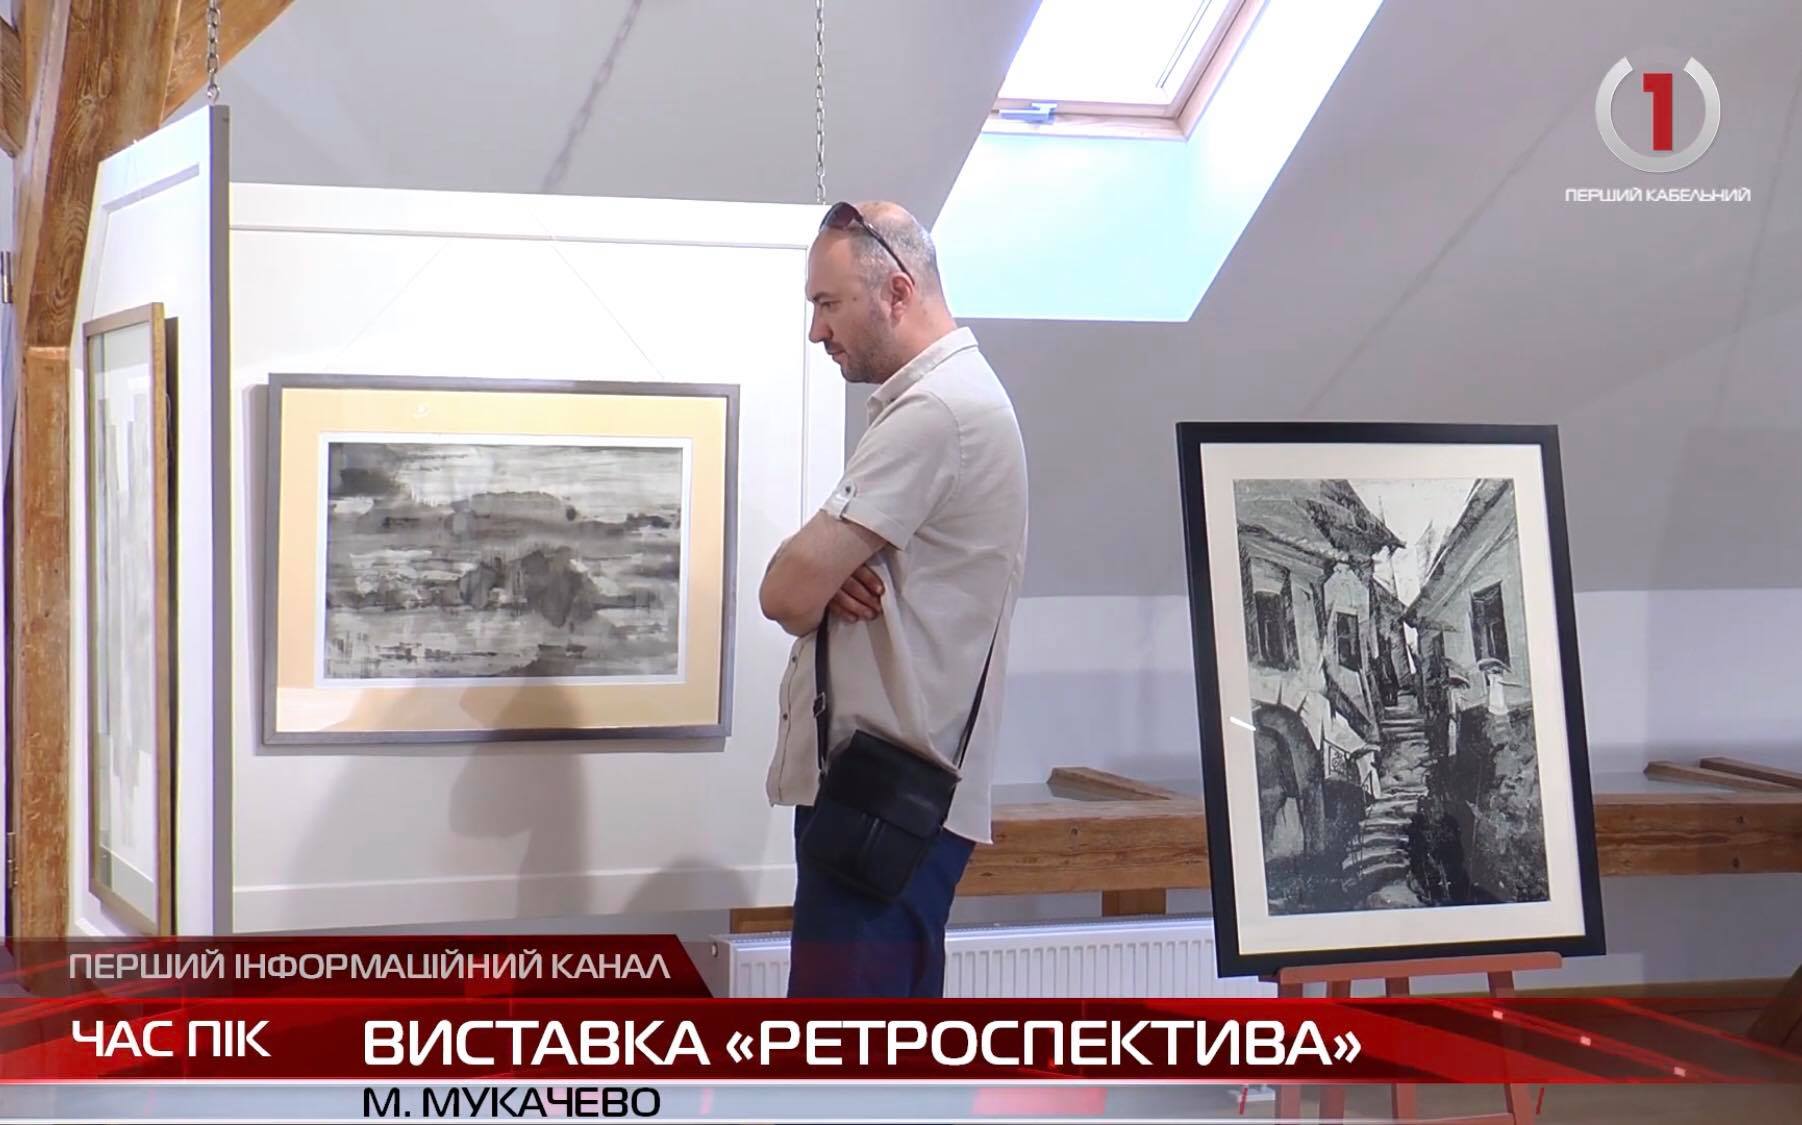 В Угорському домі ім. Мігая Мункачі відкрили виставку графіки Олександра Андялоші «Ретроспектива» (ВІДЕО)